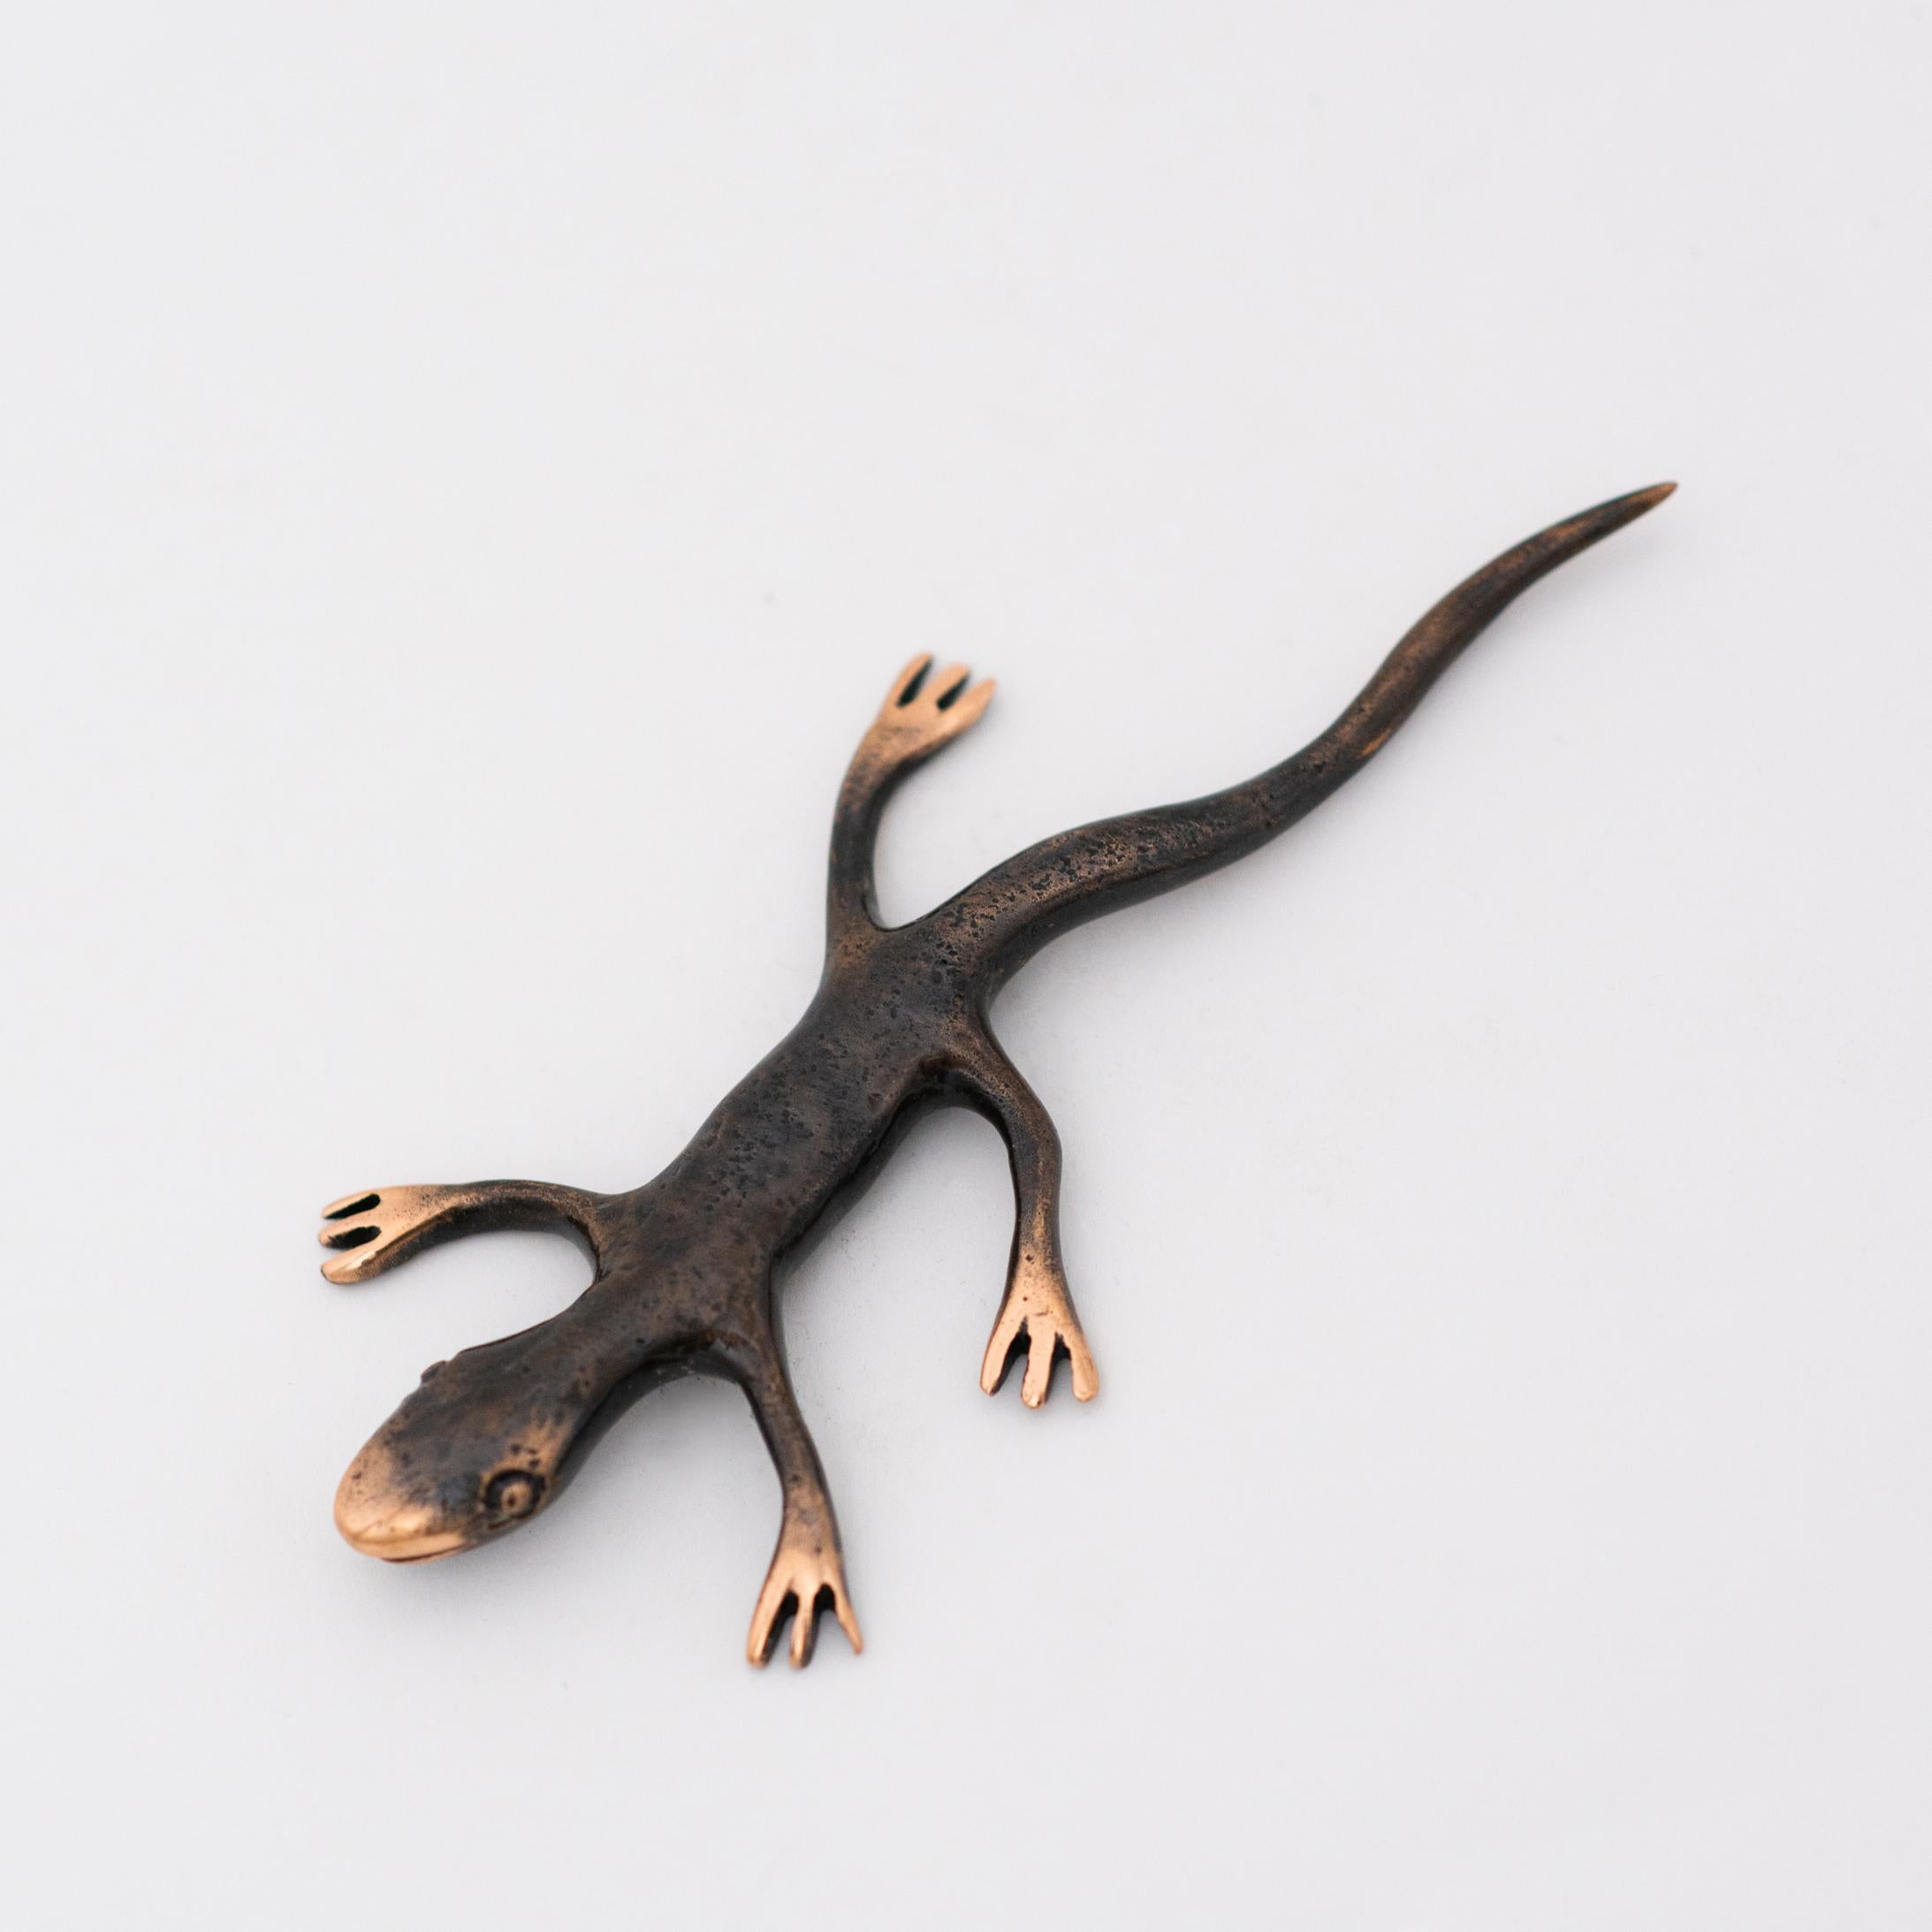 Magnifique presse-papier en bronze patiné, coulé à la main, représentant un gecko. Les détails polis des pattes du gecko mettent en valeur la couleur or rose caractéristique du bronze.

Chacun de ces geckos est fait à la main individuellement avec